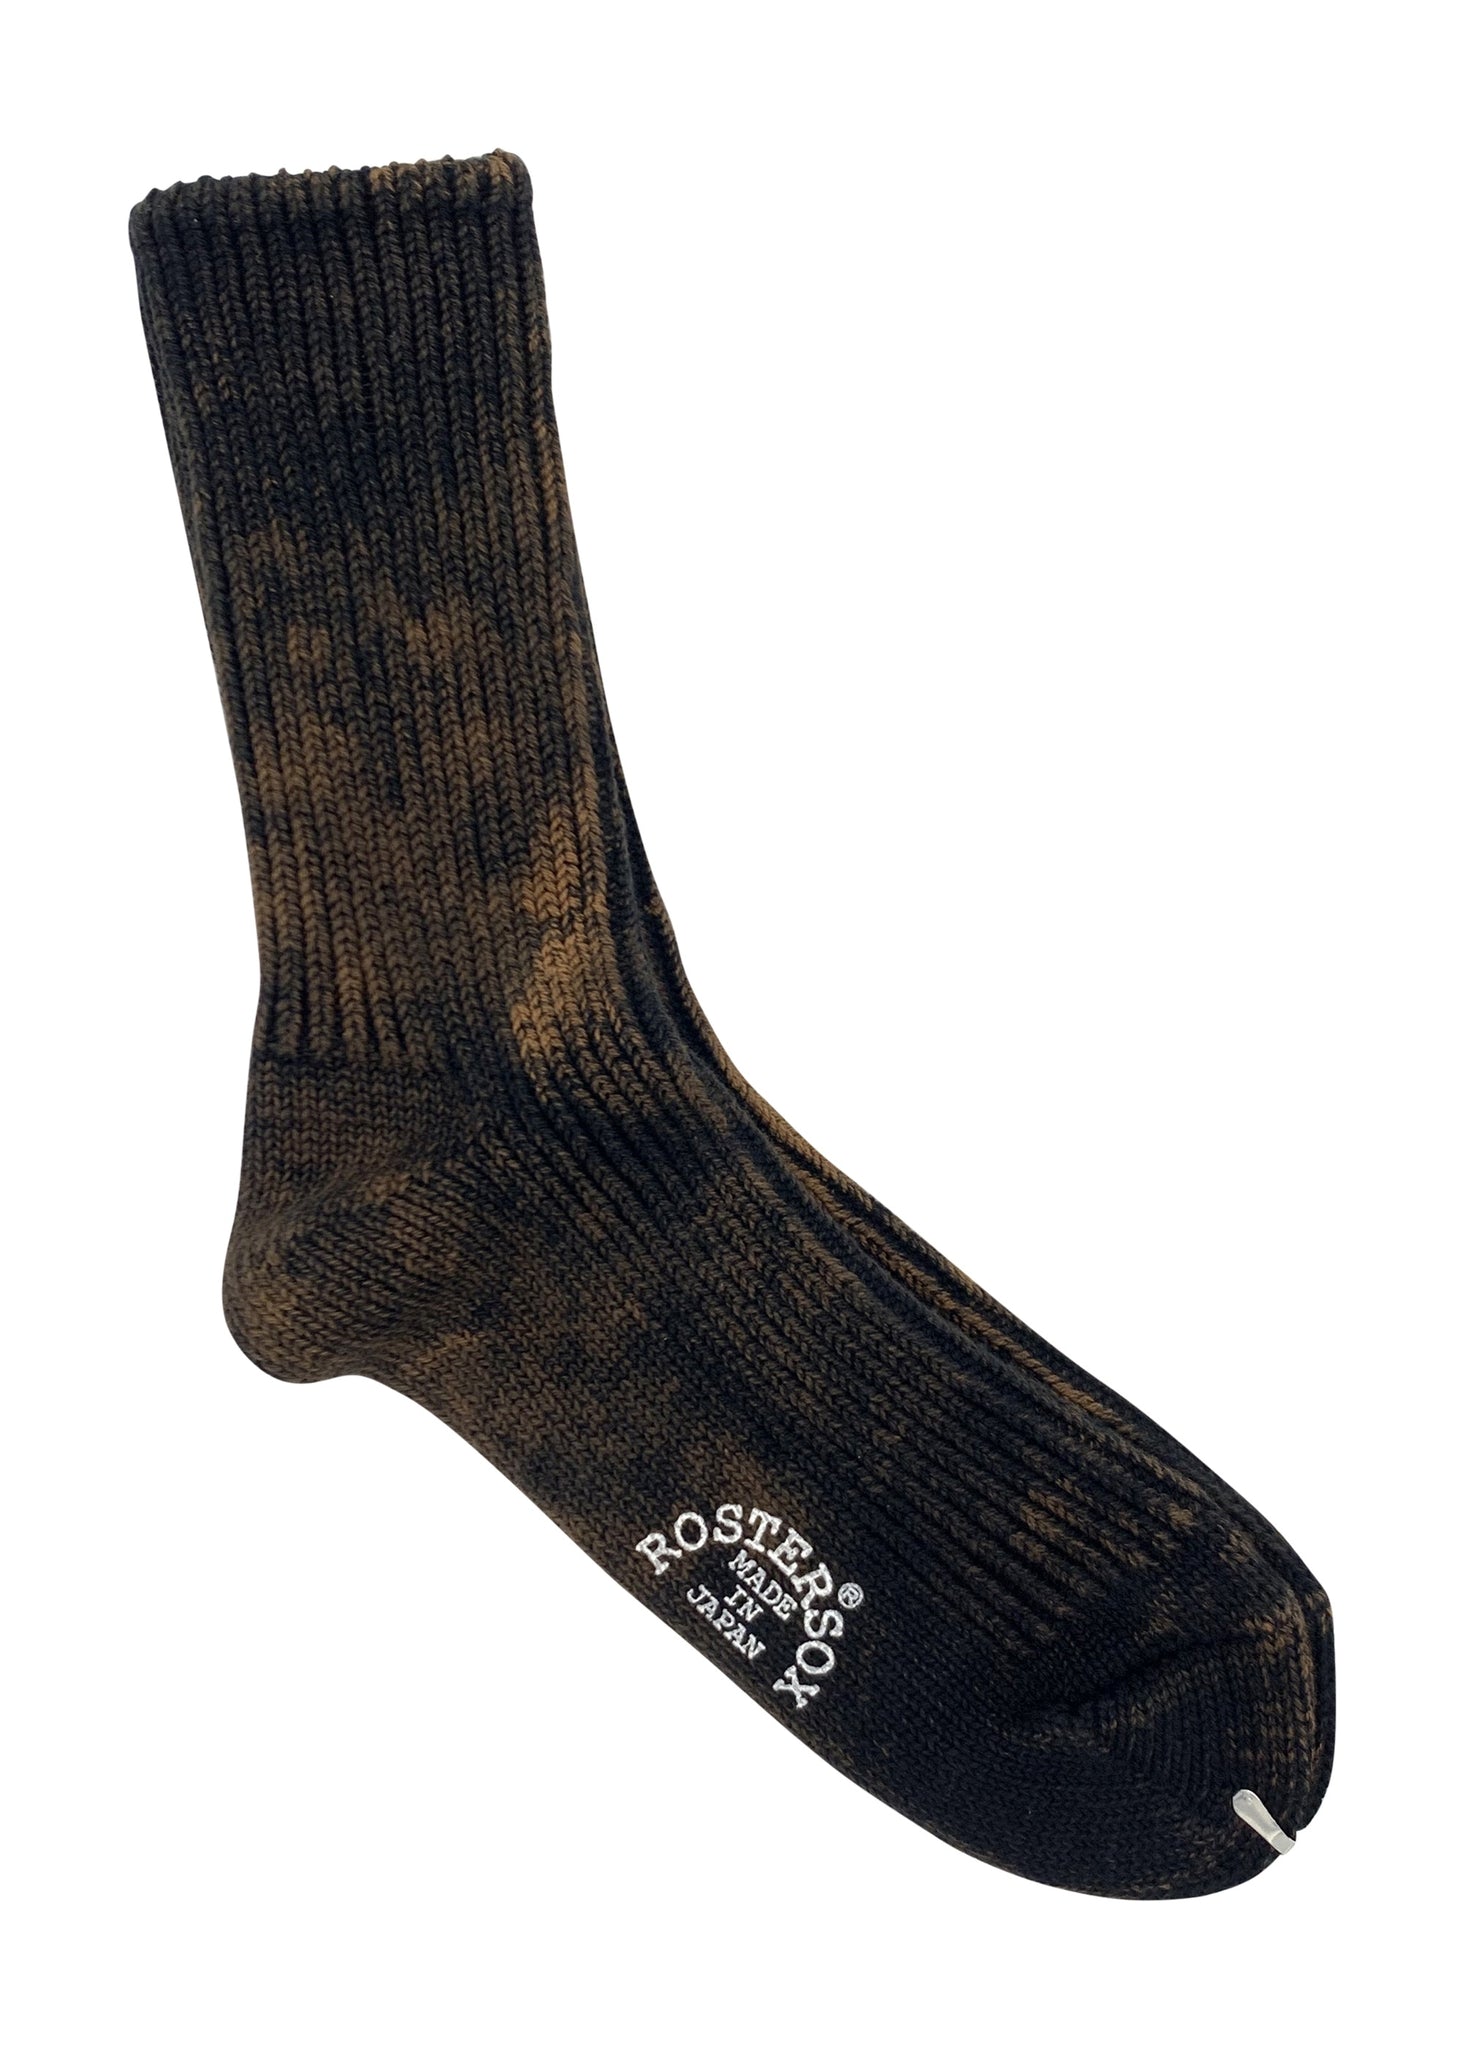 Rostersox's BA Socks - Black